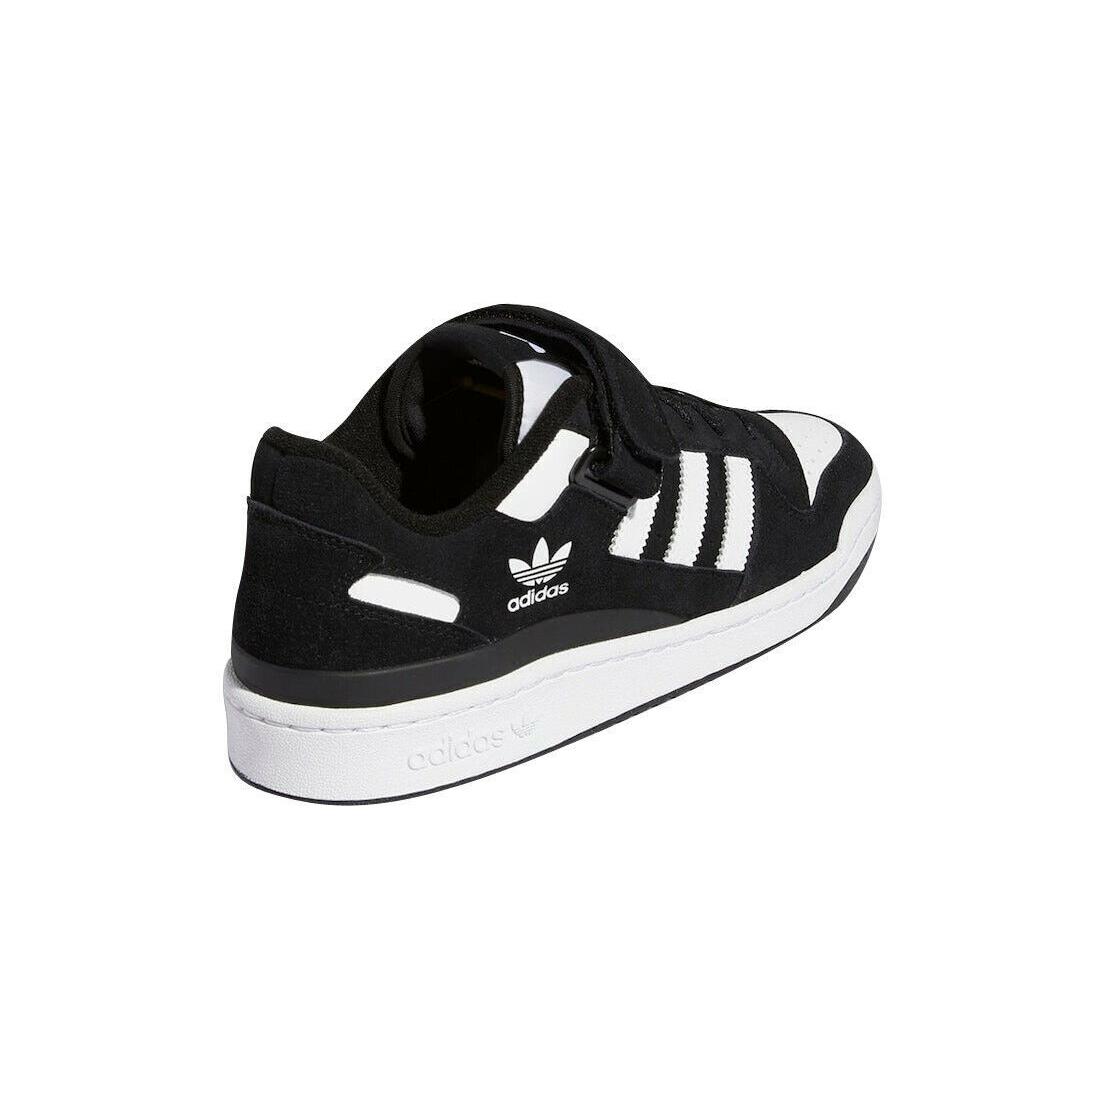 Adidas shoes Originals - Black 2